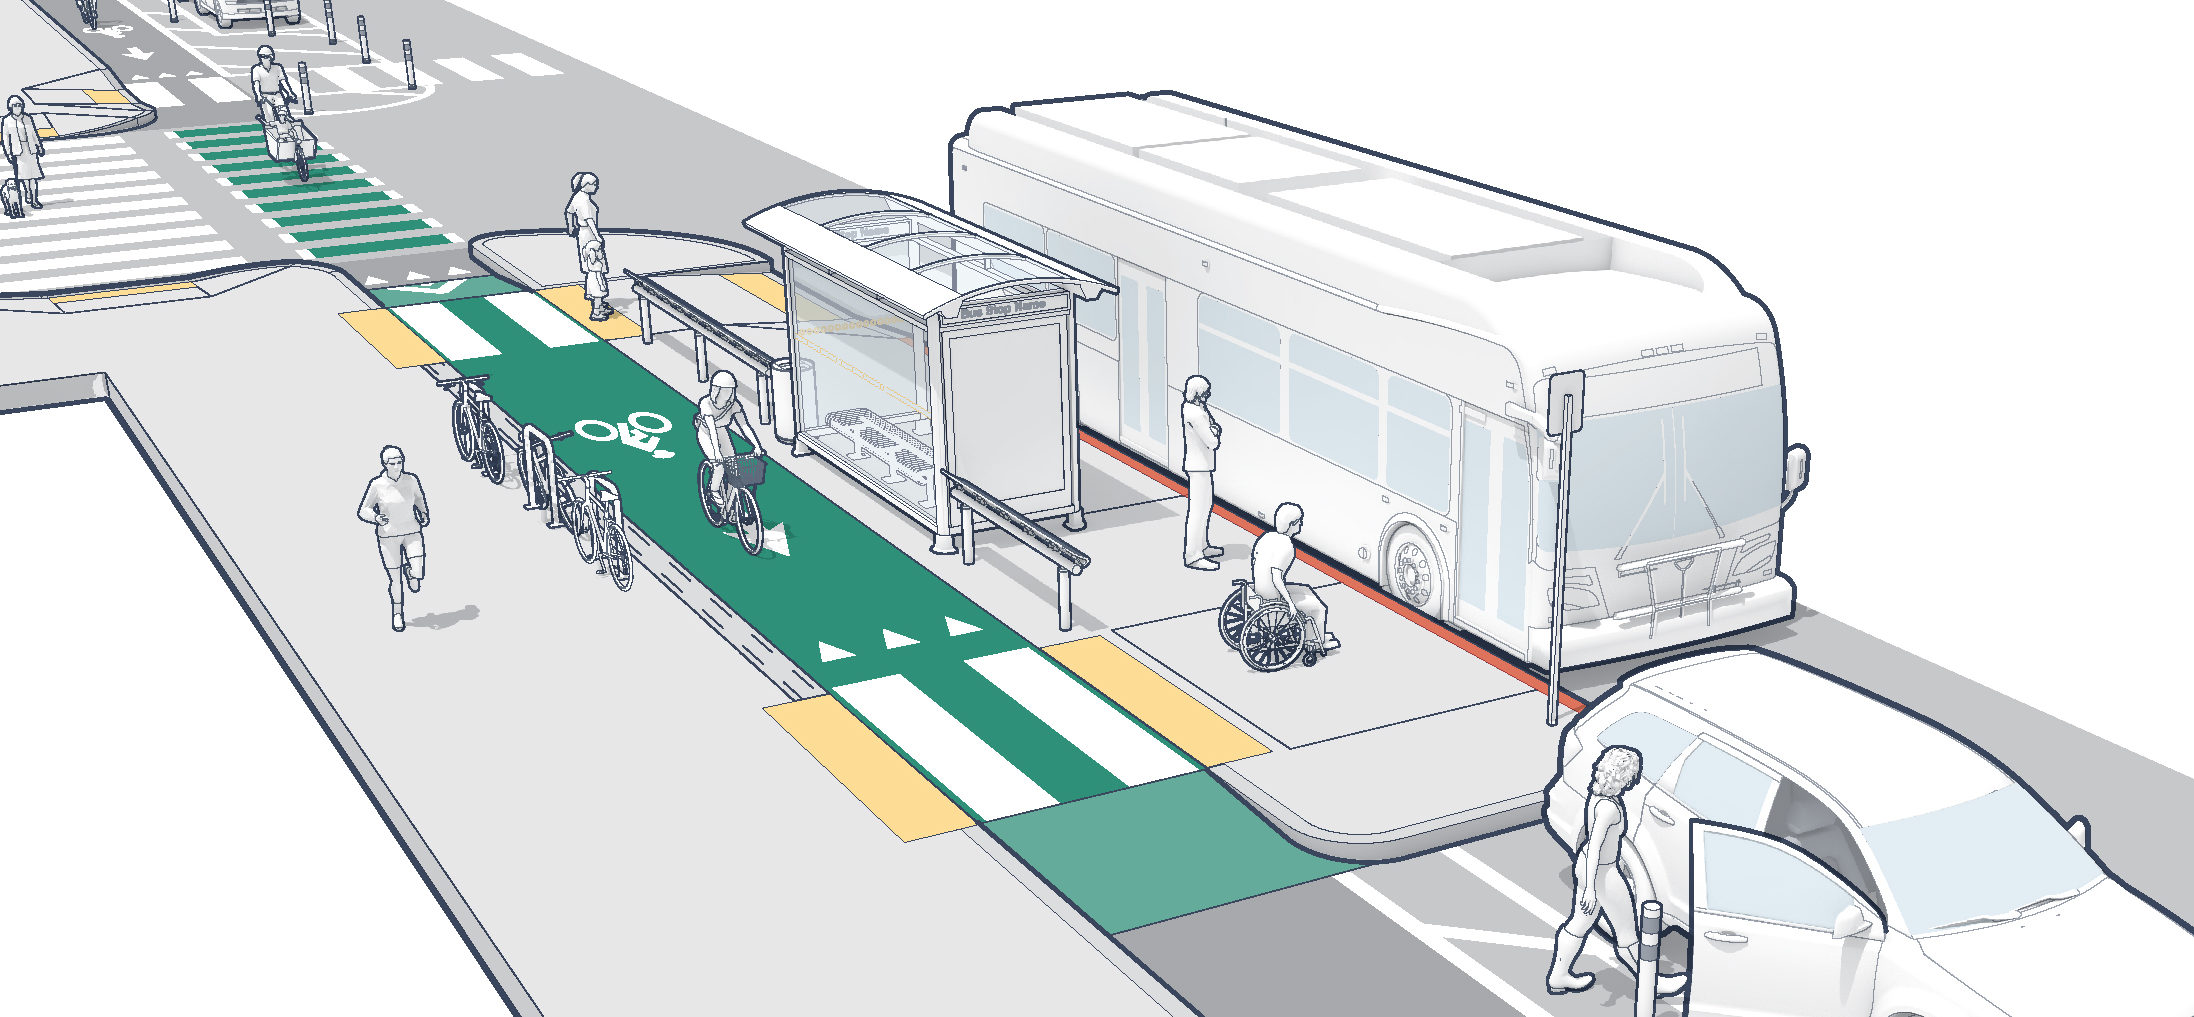 bus shelter design guidelines